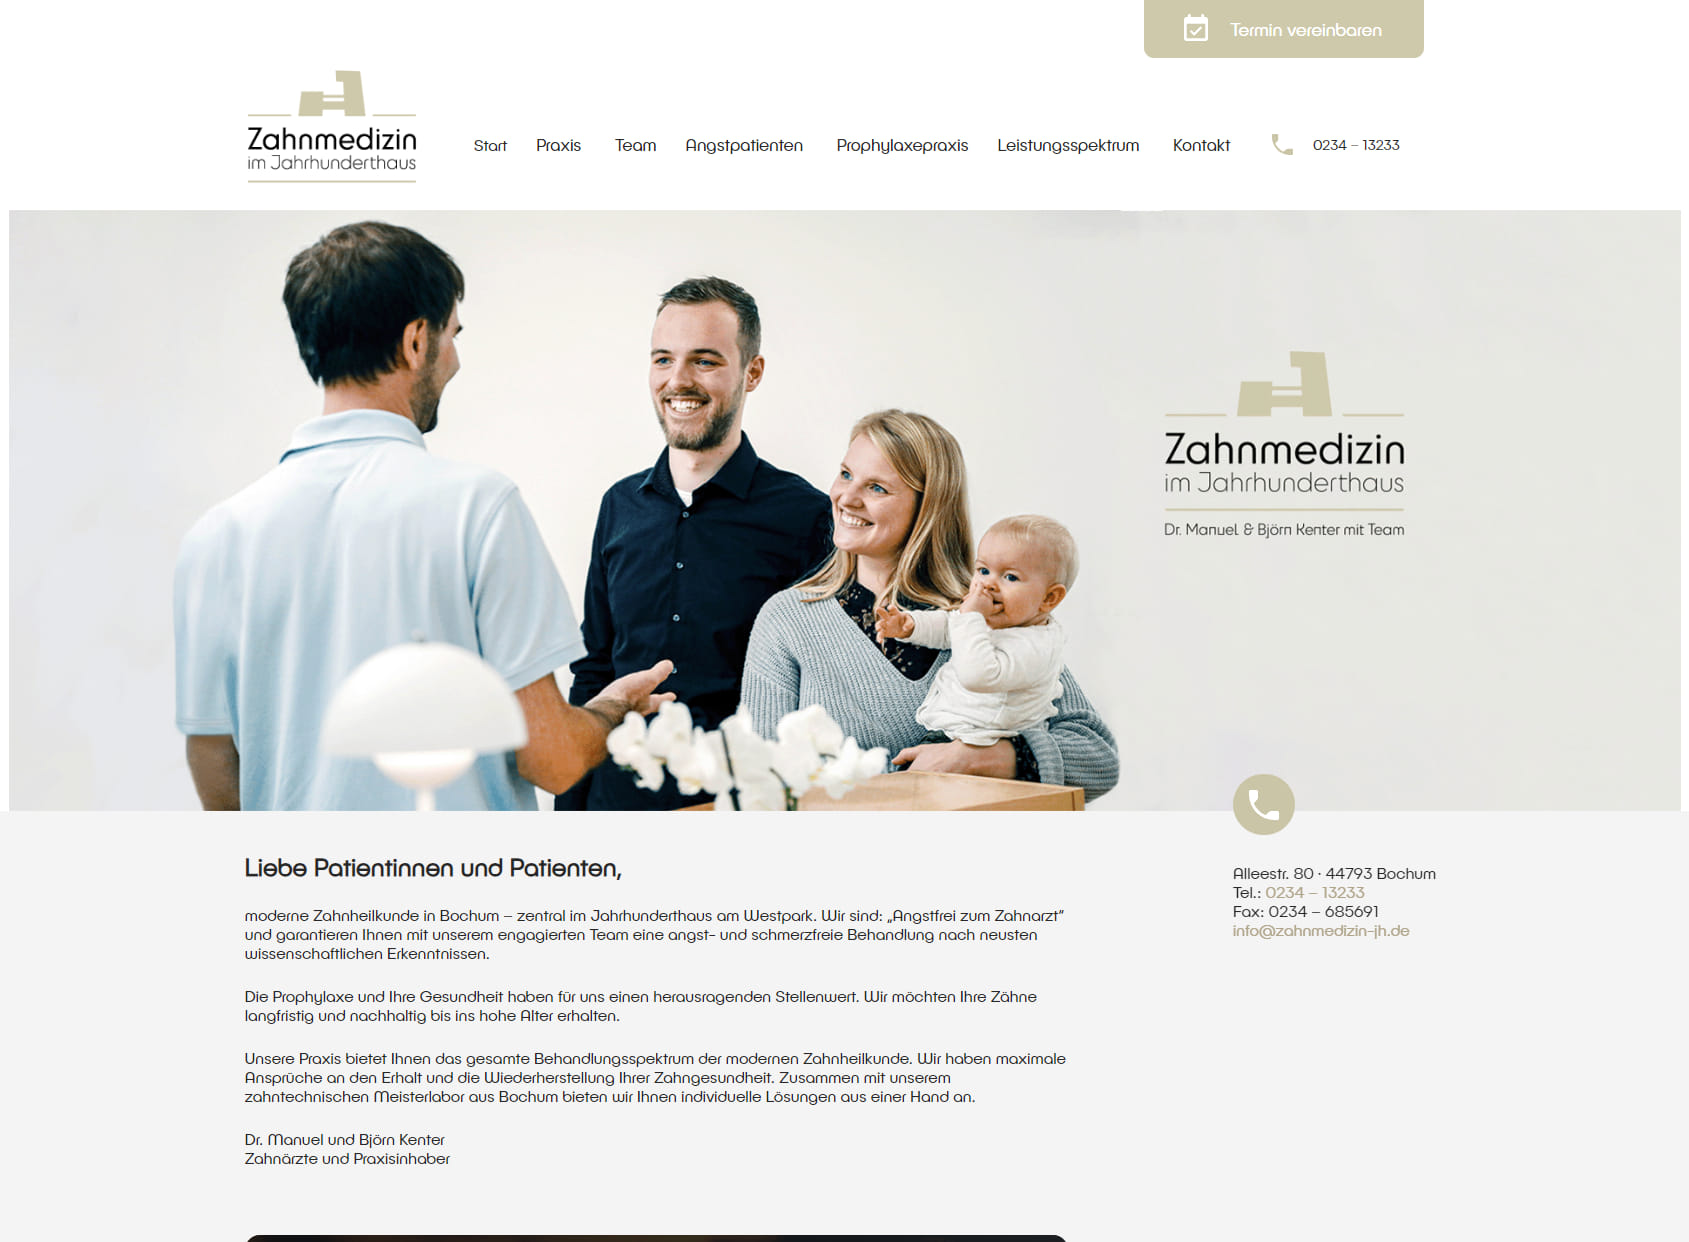 Zahnmedizin im Jahrhunderthaus - Dr. Manuel und Björn Kenter - Zahnarzt Bochum